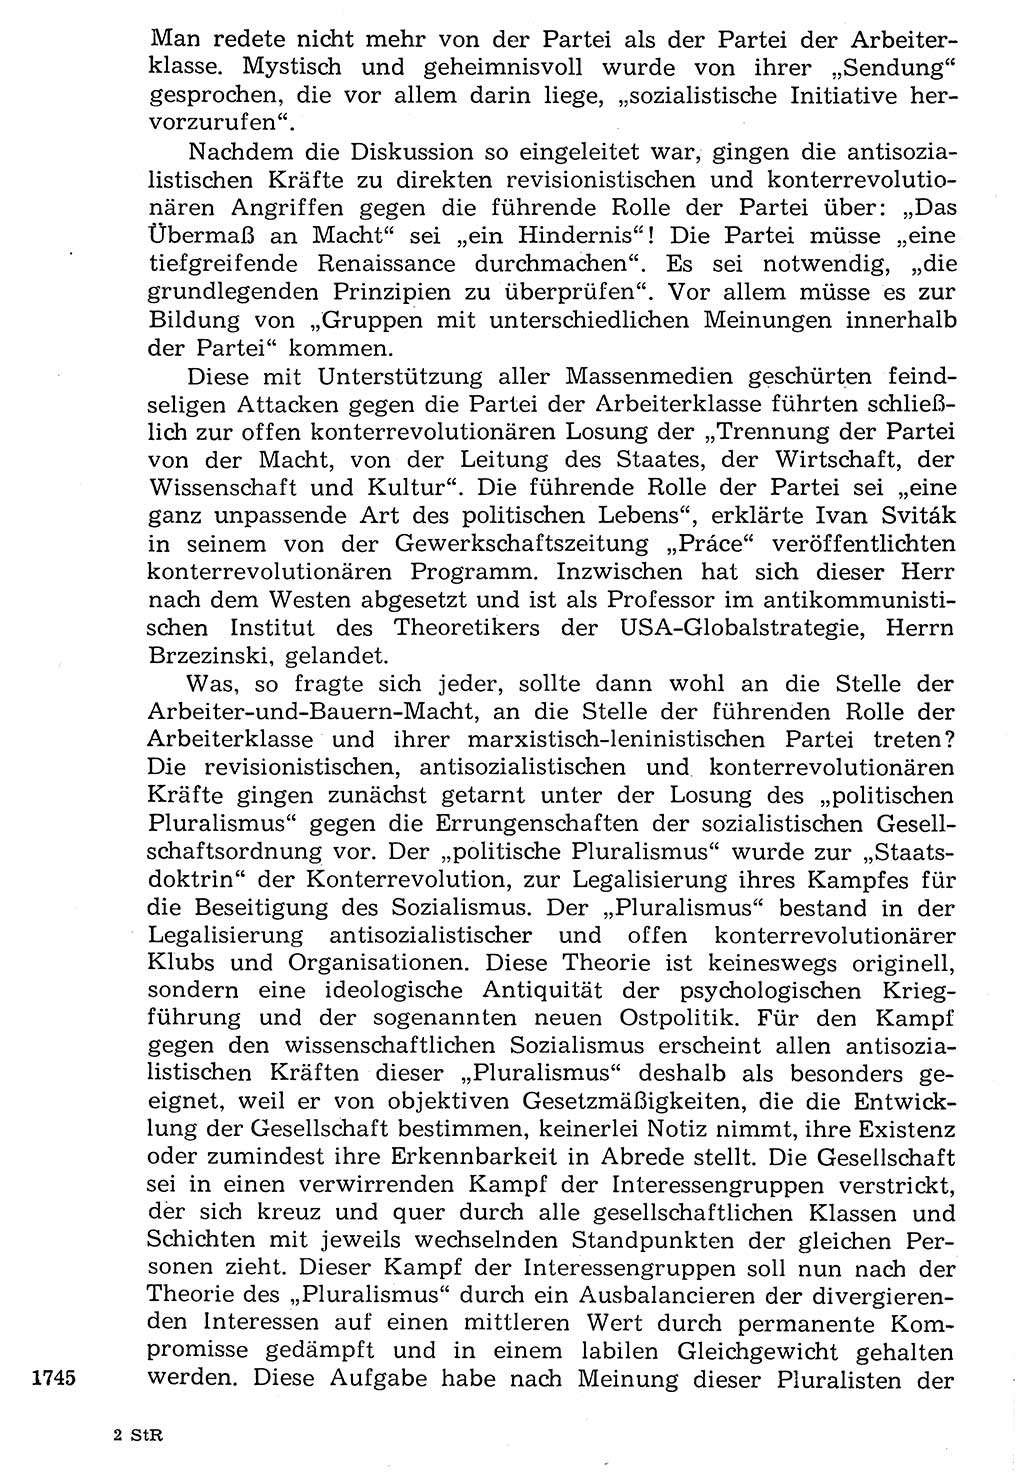 Staat und Recht (StuR), 17. Jahrgang [Deutsche Demokratische Republik (DDR)] 1968, Seite 1745 (StuR DDR 1968, S. 1745)